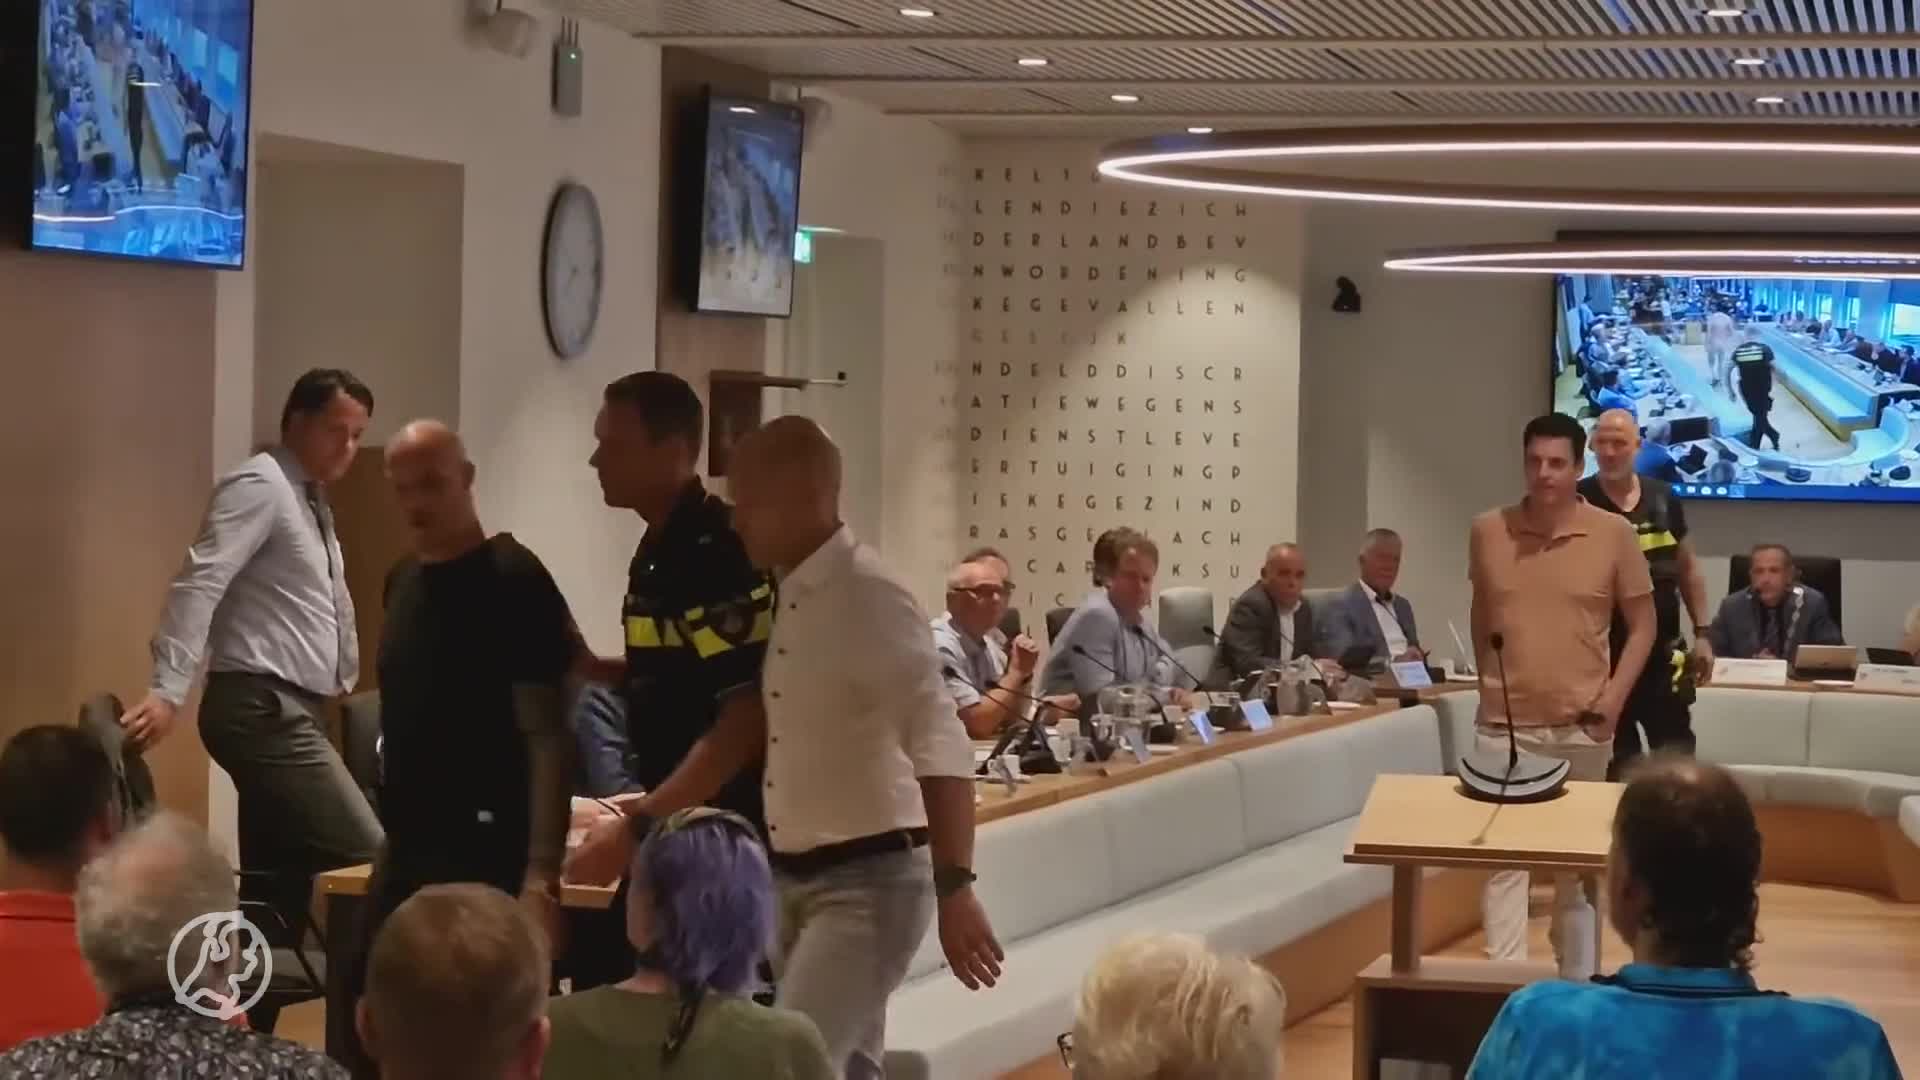 Raadsvergadering Alblasserdam loopt uit de hand, boze inwoner afgevoerd door politie